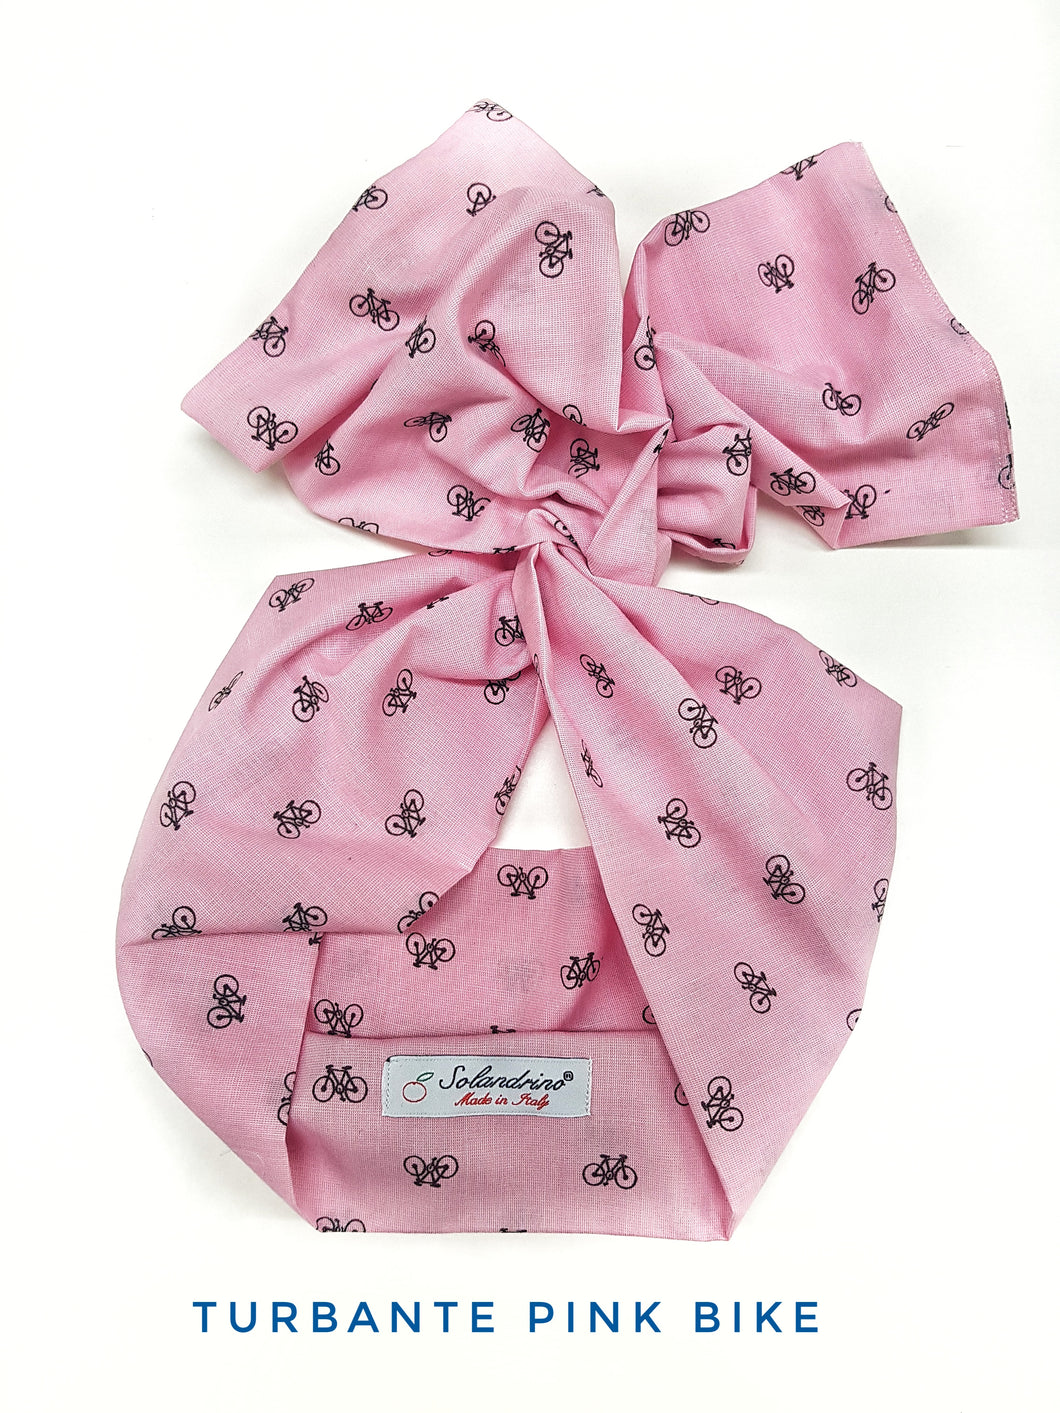 Turbante rosa Fashion in cotone fascia capelli design Pink bike hairband Made in Italy